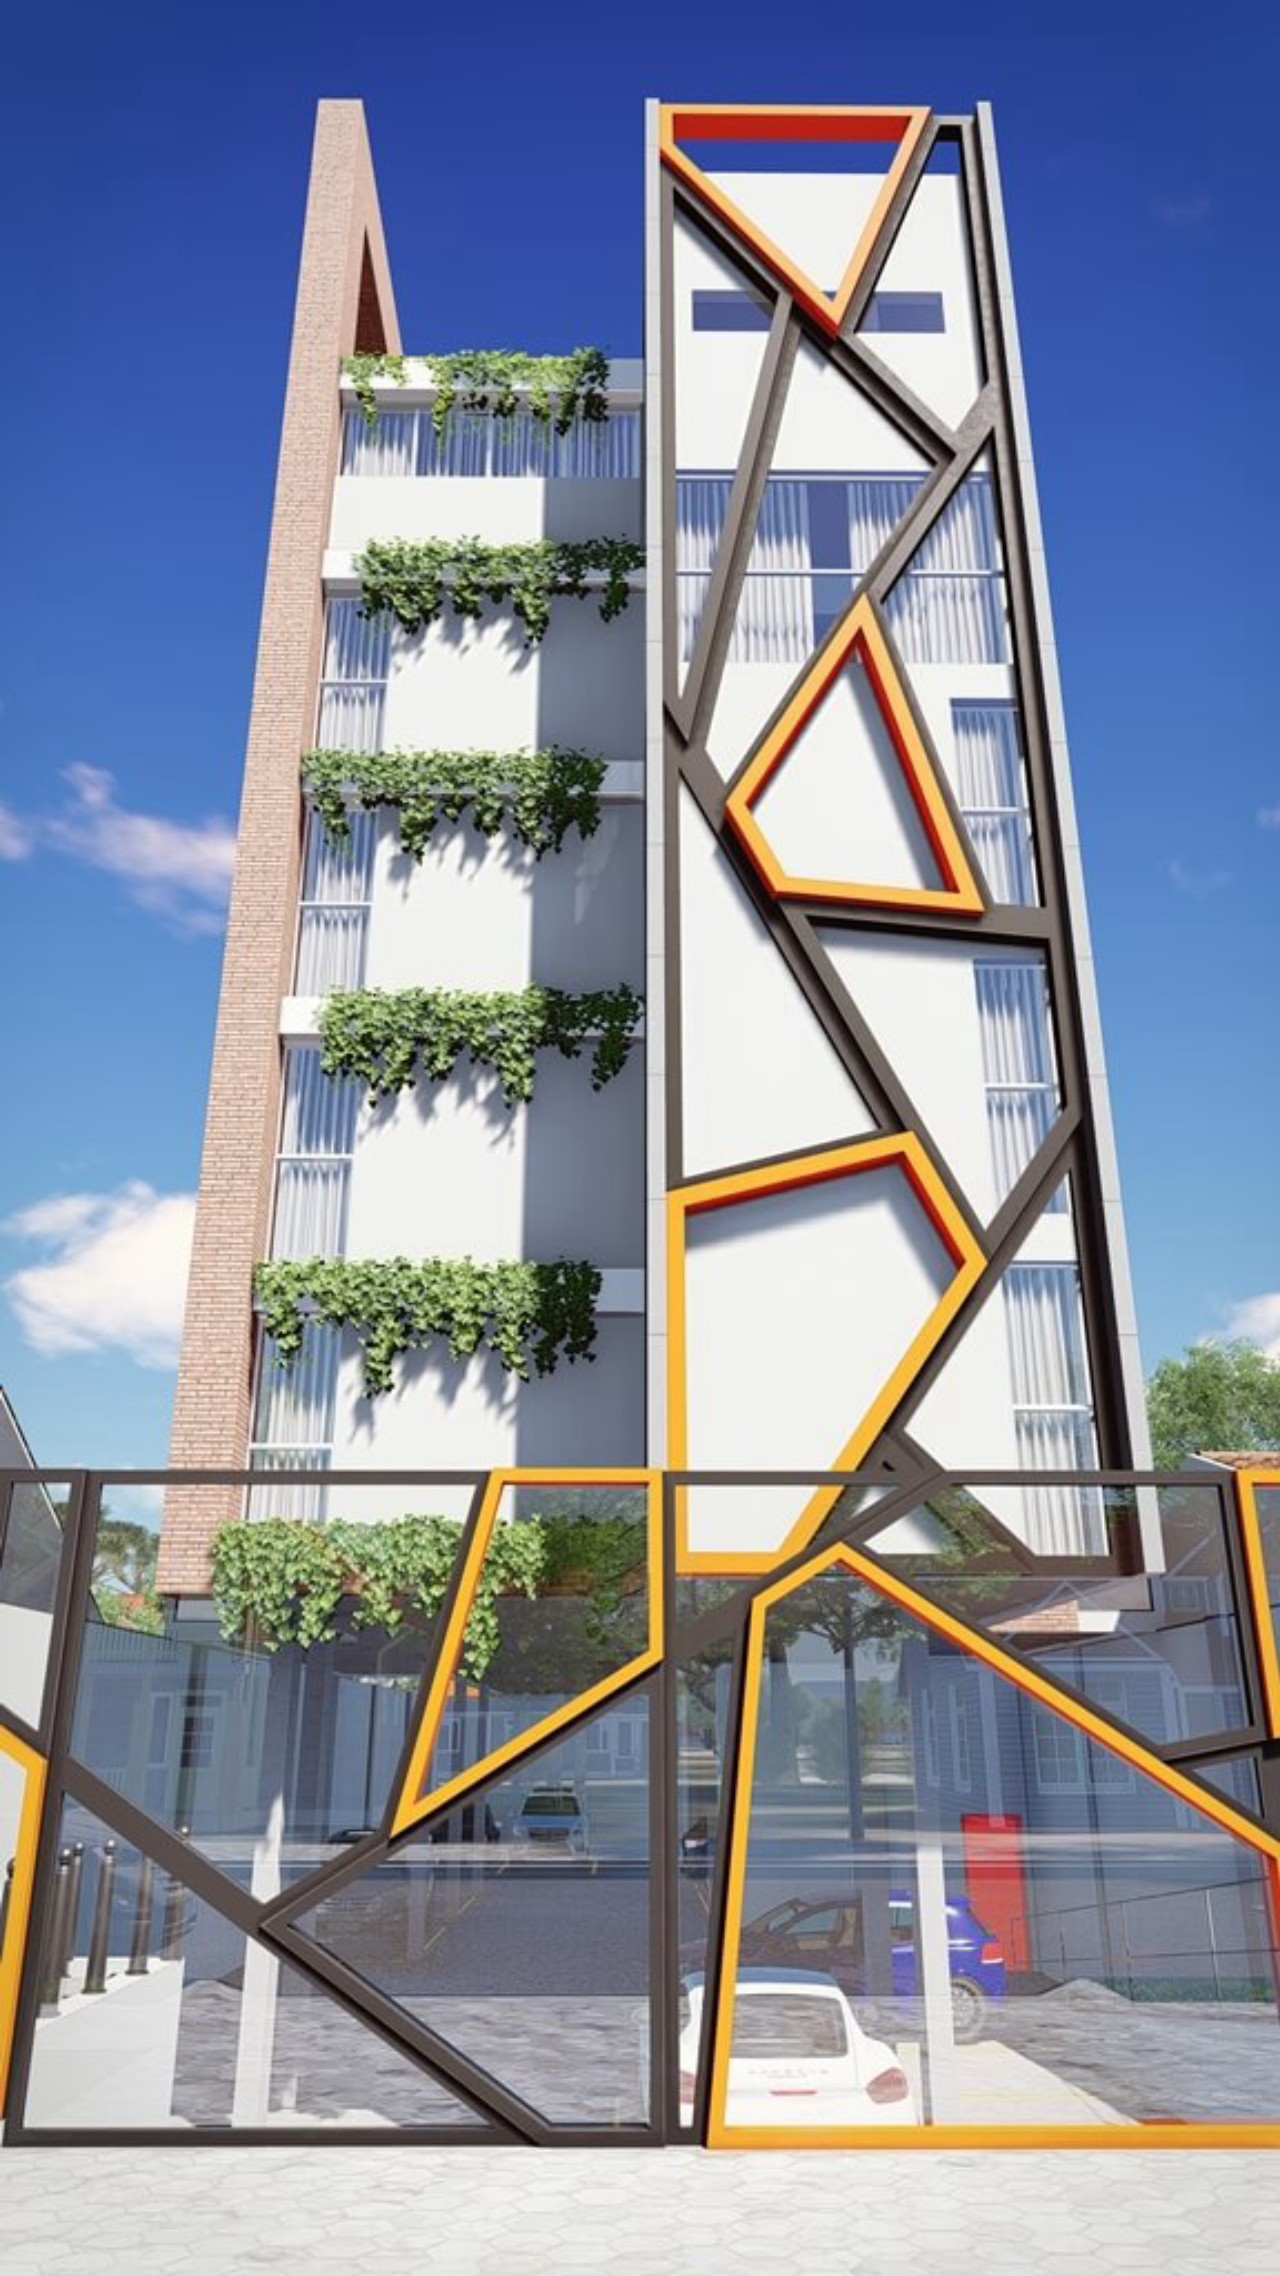 A fachada representa o conceito urbano e moderno do empreendimento. Imagem: Divulgação